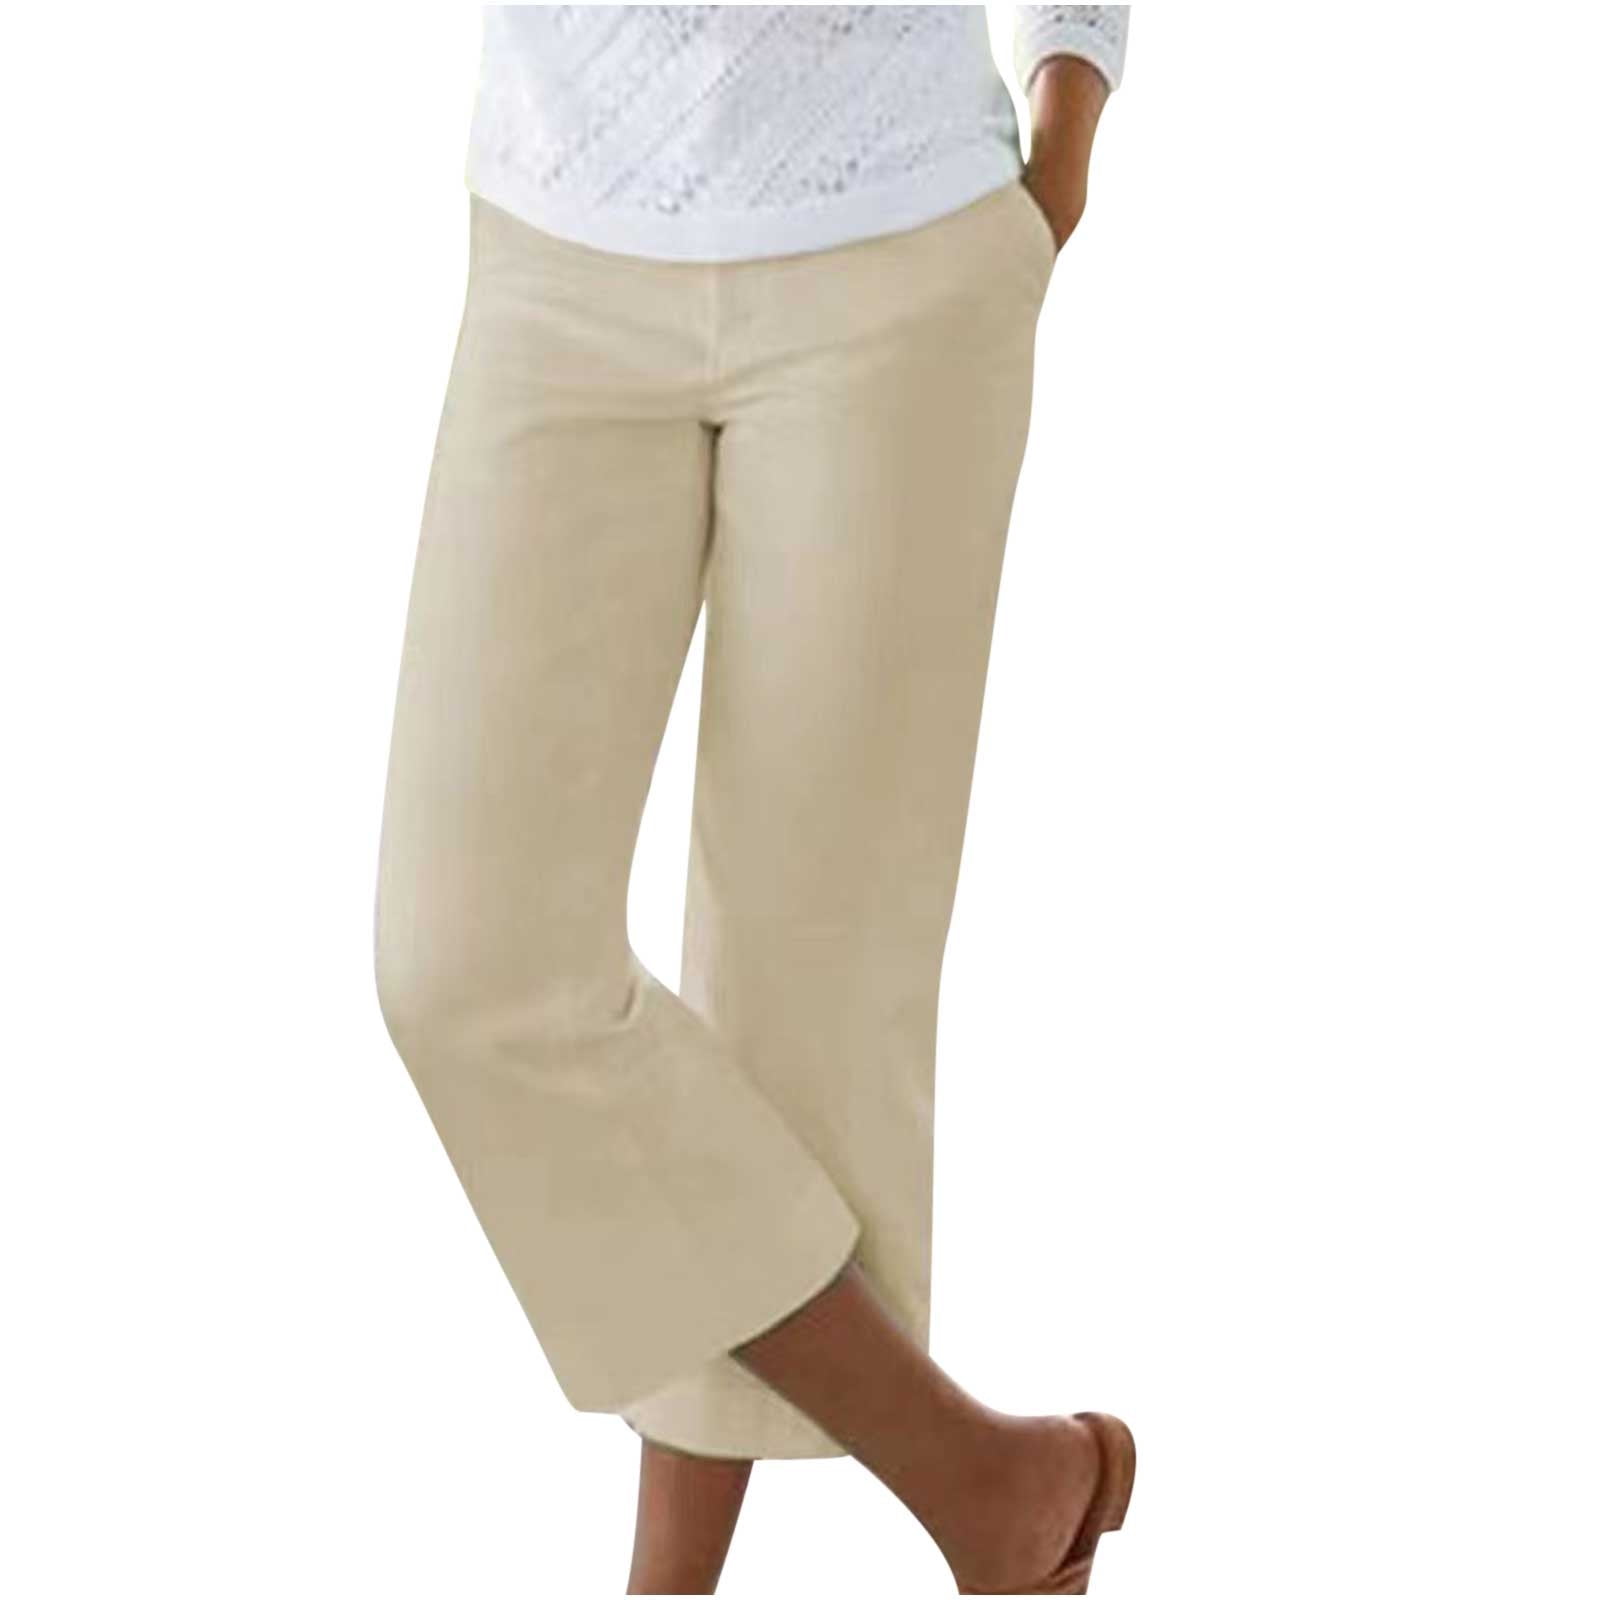 Maplenight Plus Size Capri Pants Women's Solid Color Elastic Waist ...